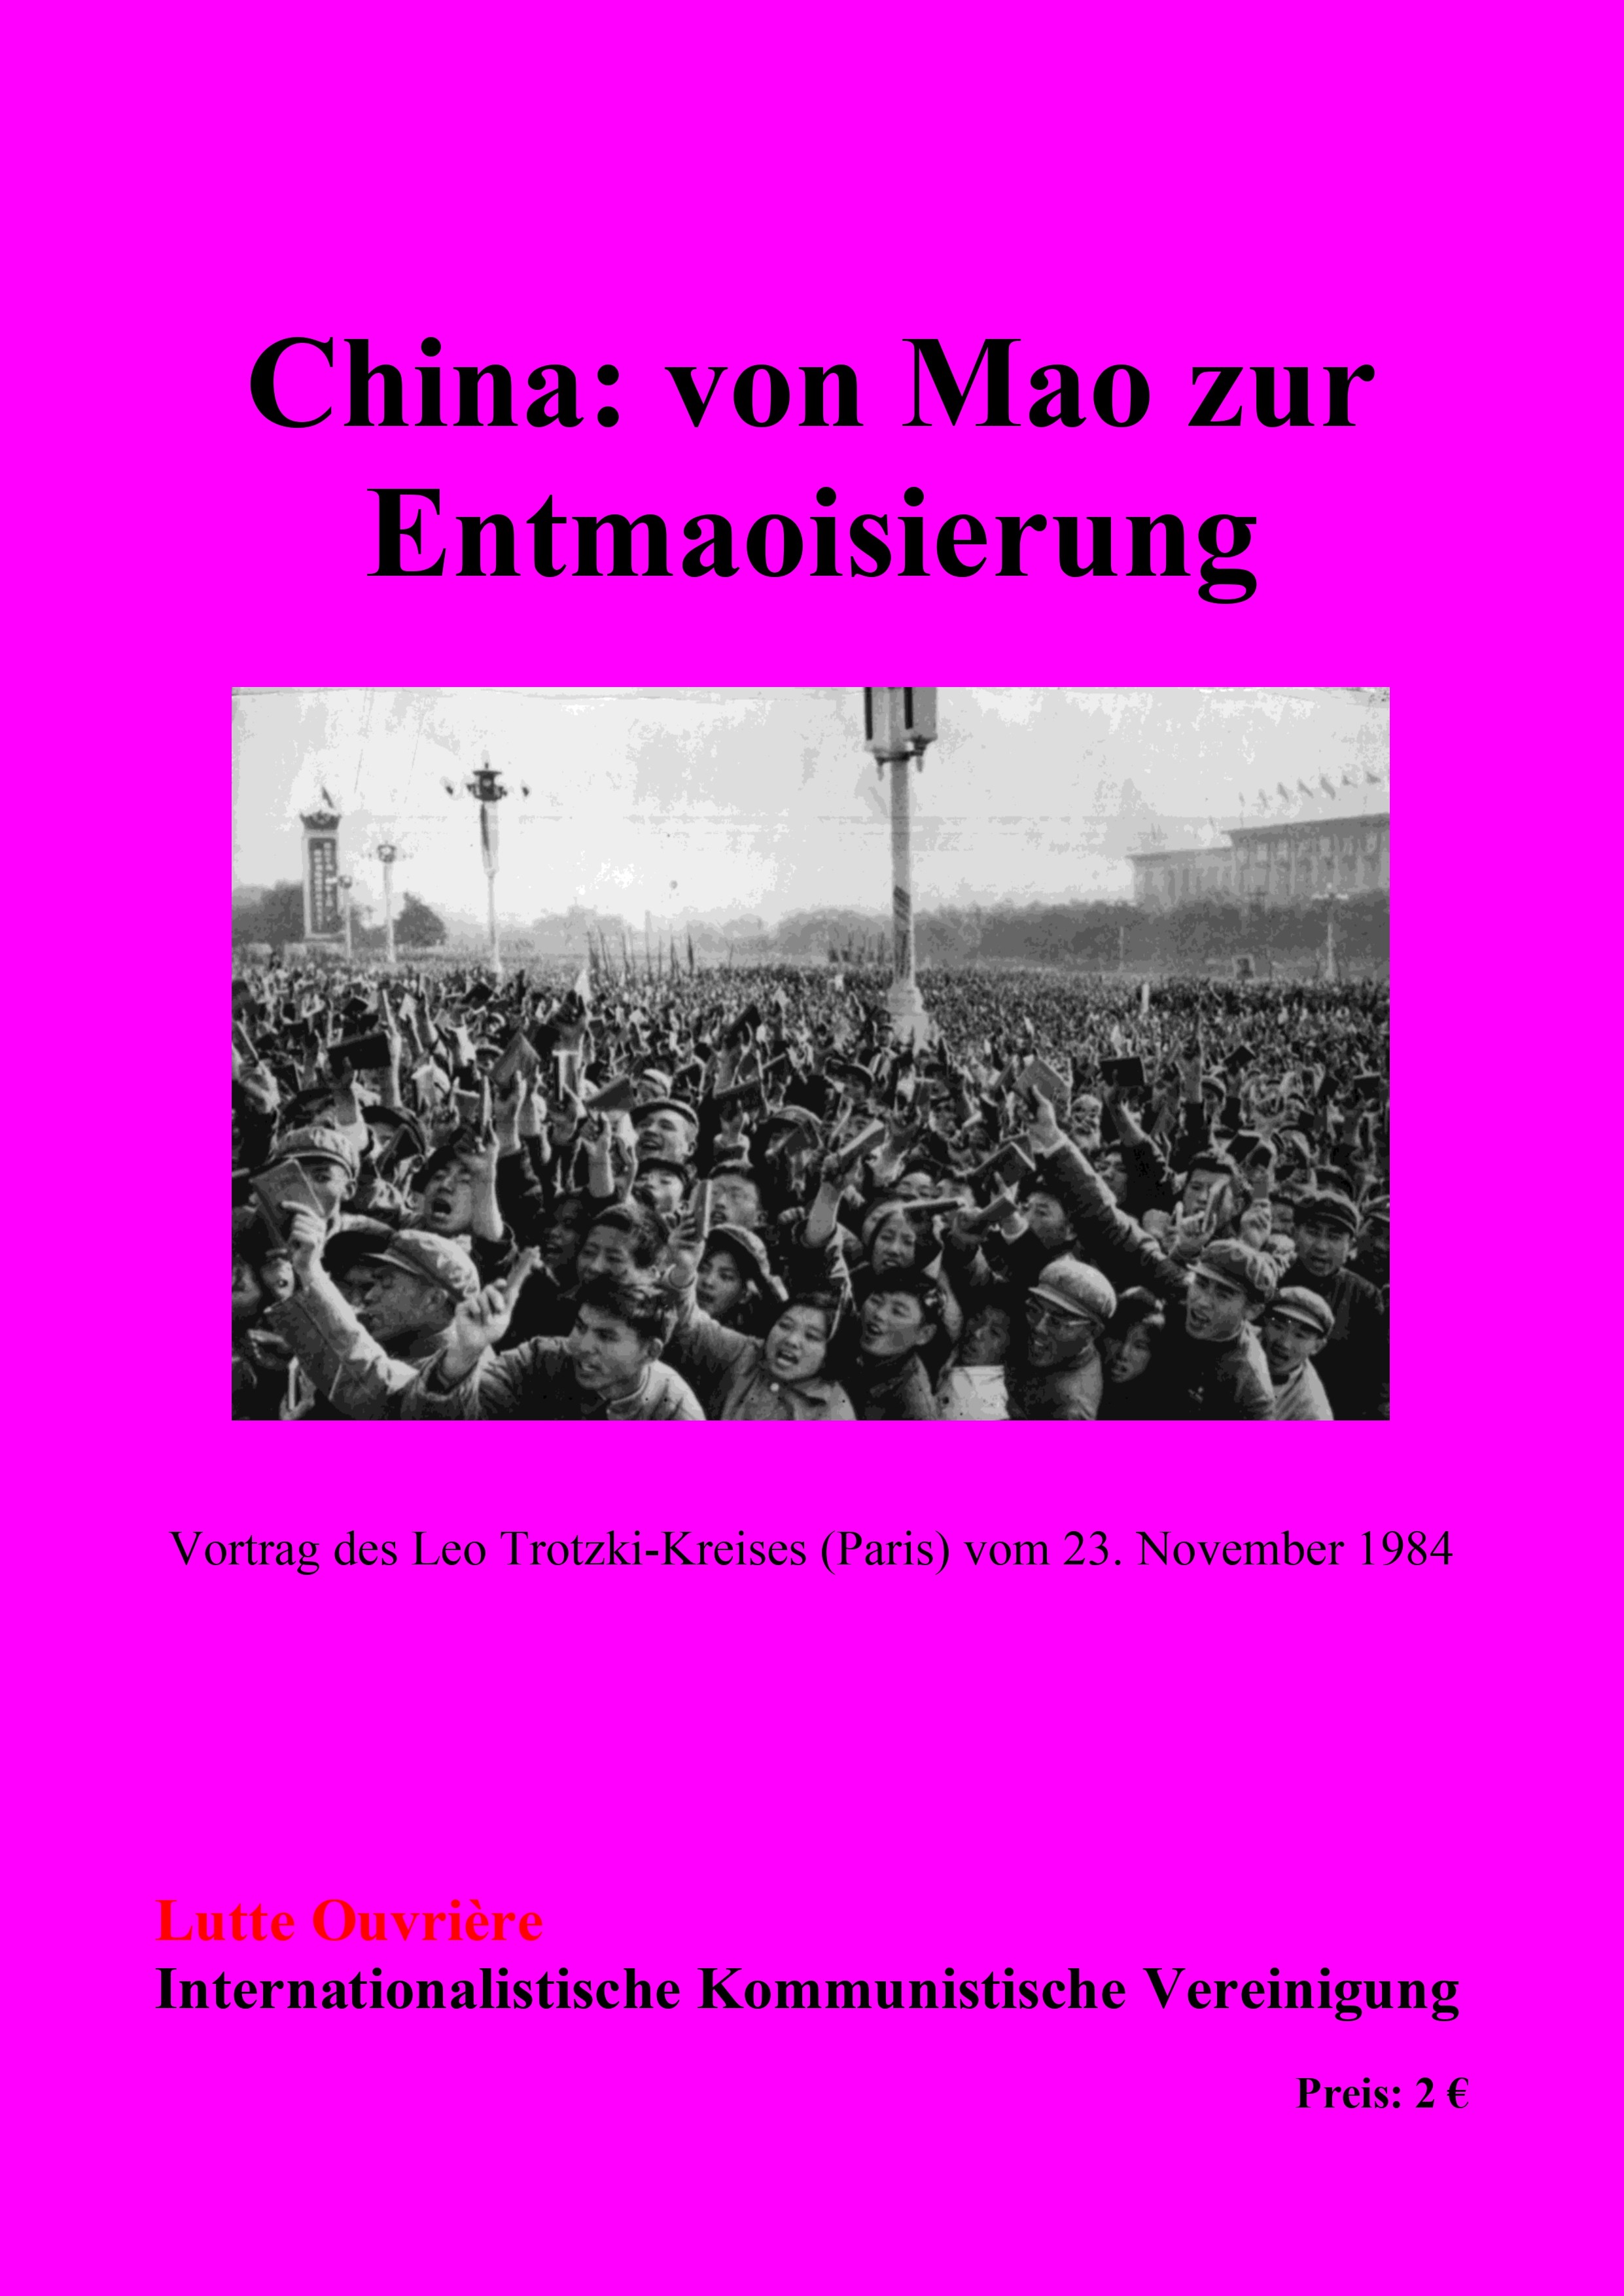 China - Von Mao zur Entmaoisierung (CLT 1984) - (Deckel)_pages-to-jpg-0001.jpg